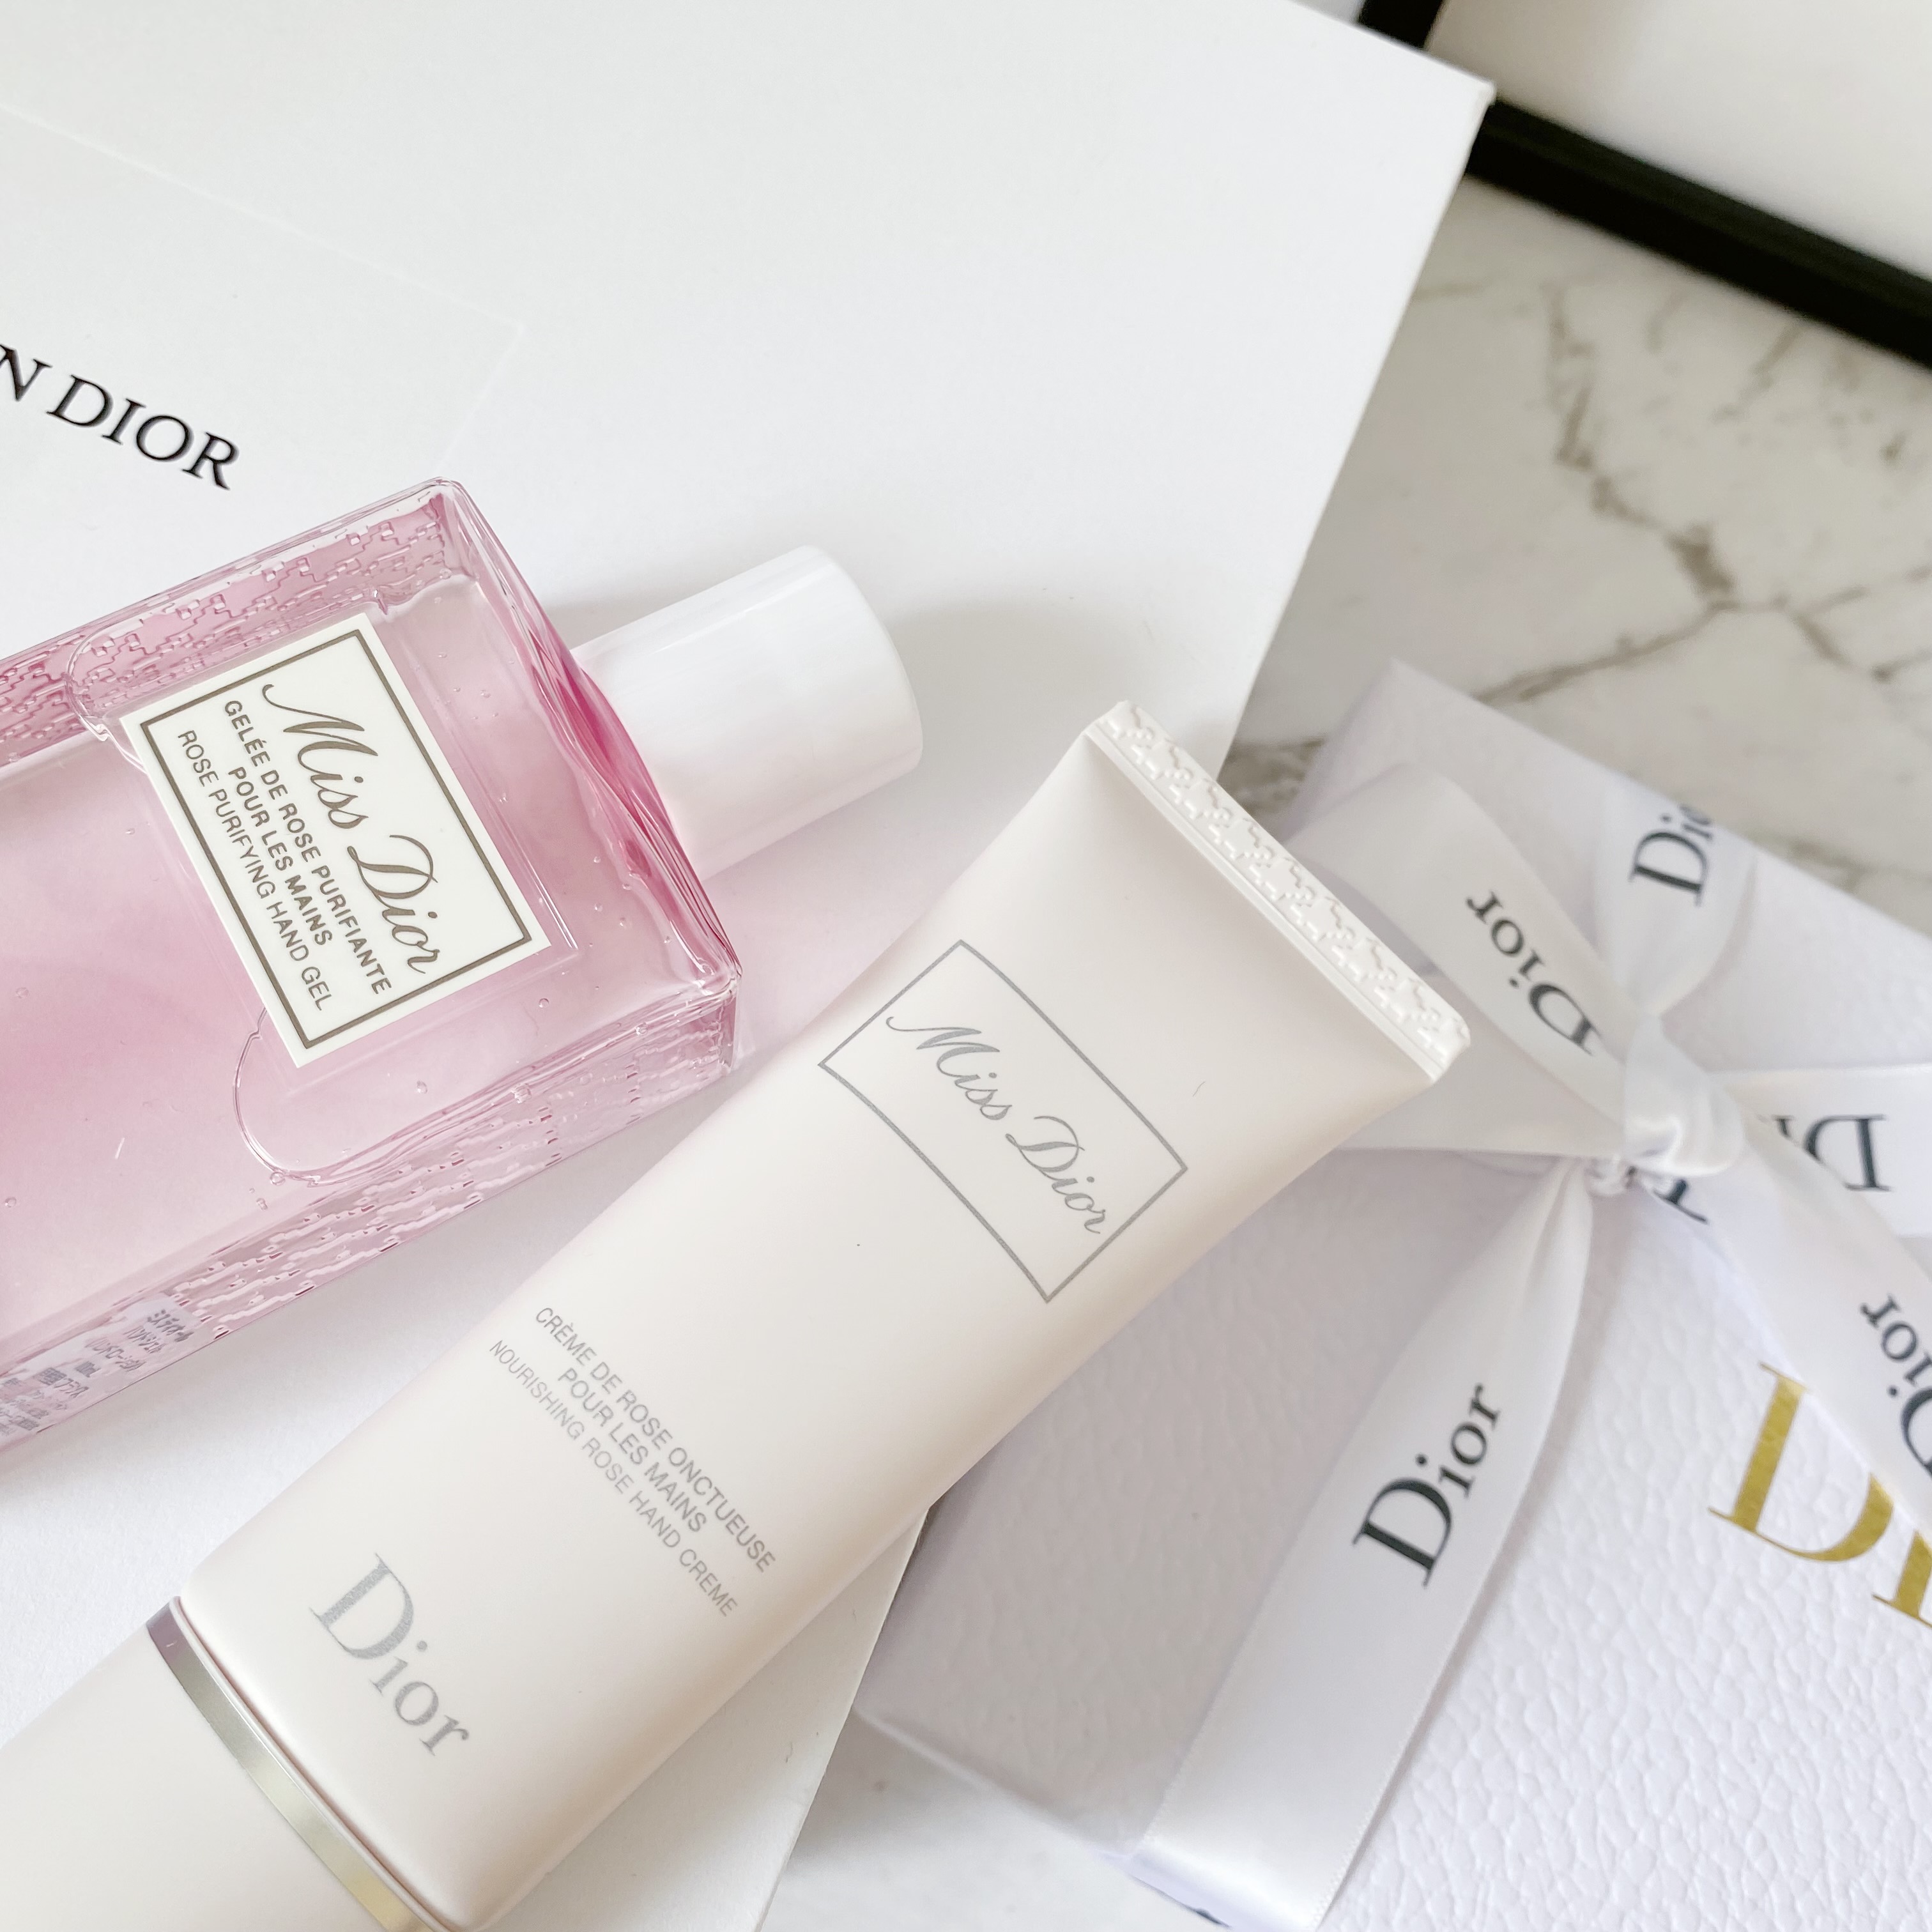 m-i-d / BEAUTY部 】Miss Dior (ミスディオール) ハンドクリーム&ハンドジェル | Aveniretoile(アベニールエトワール)公式スタッフブログ